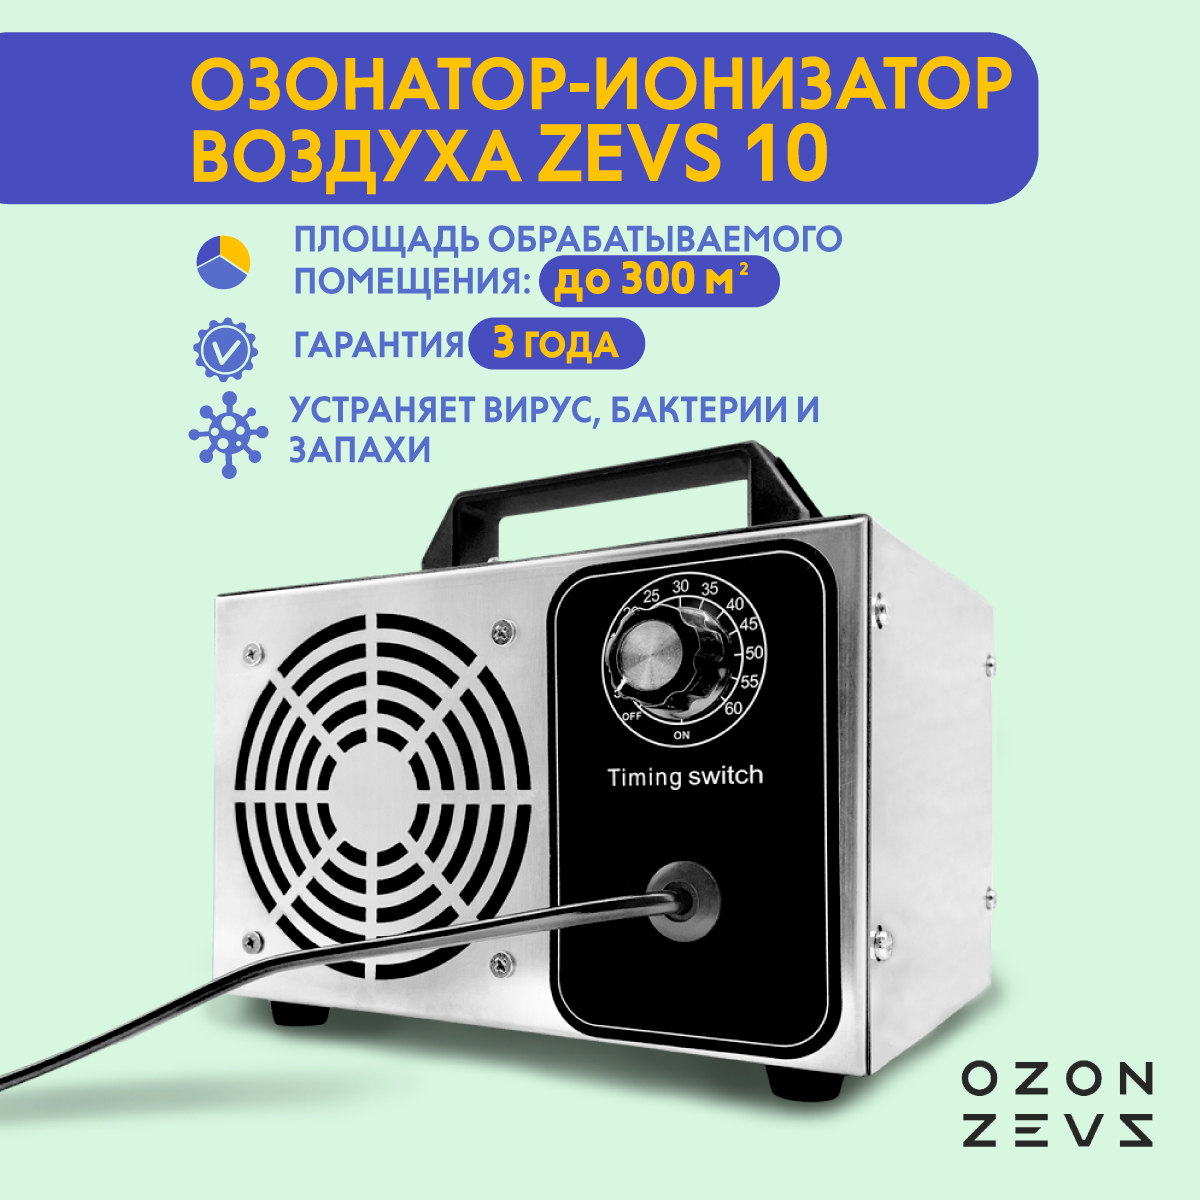 Купить Озонатор OZON-ZEVS 10 ионизатор воздуха бытовой для дезинфекции помещений, серебристый